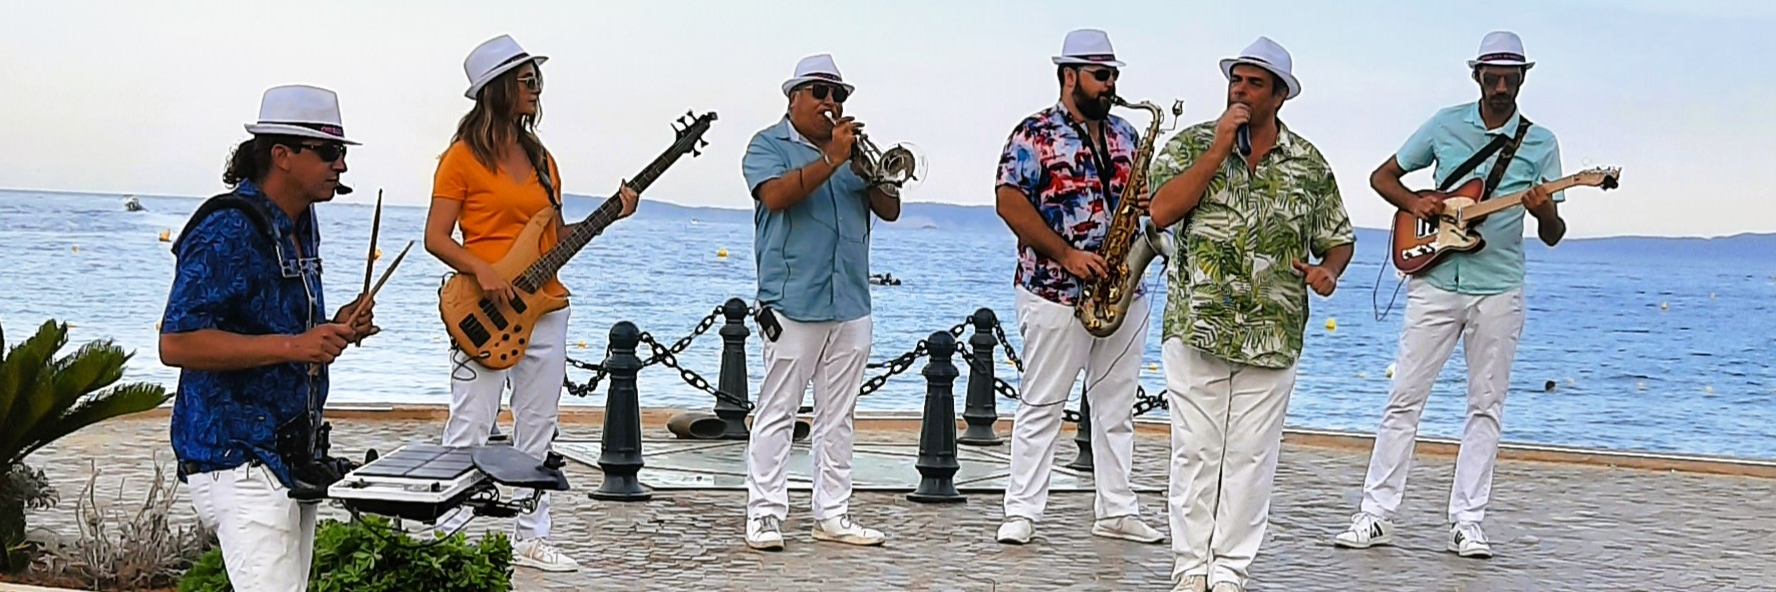 Quality Street Band, groupe de musique Fanfare en représentation à Hérault - photo de couverture n° 1